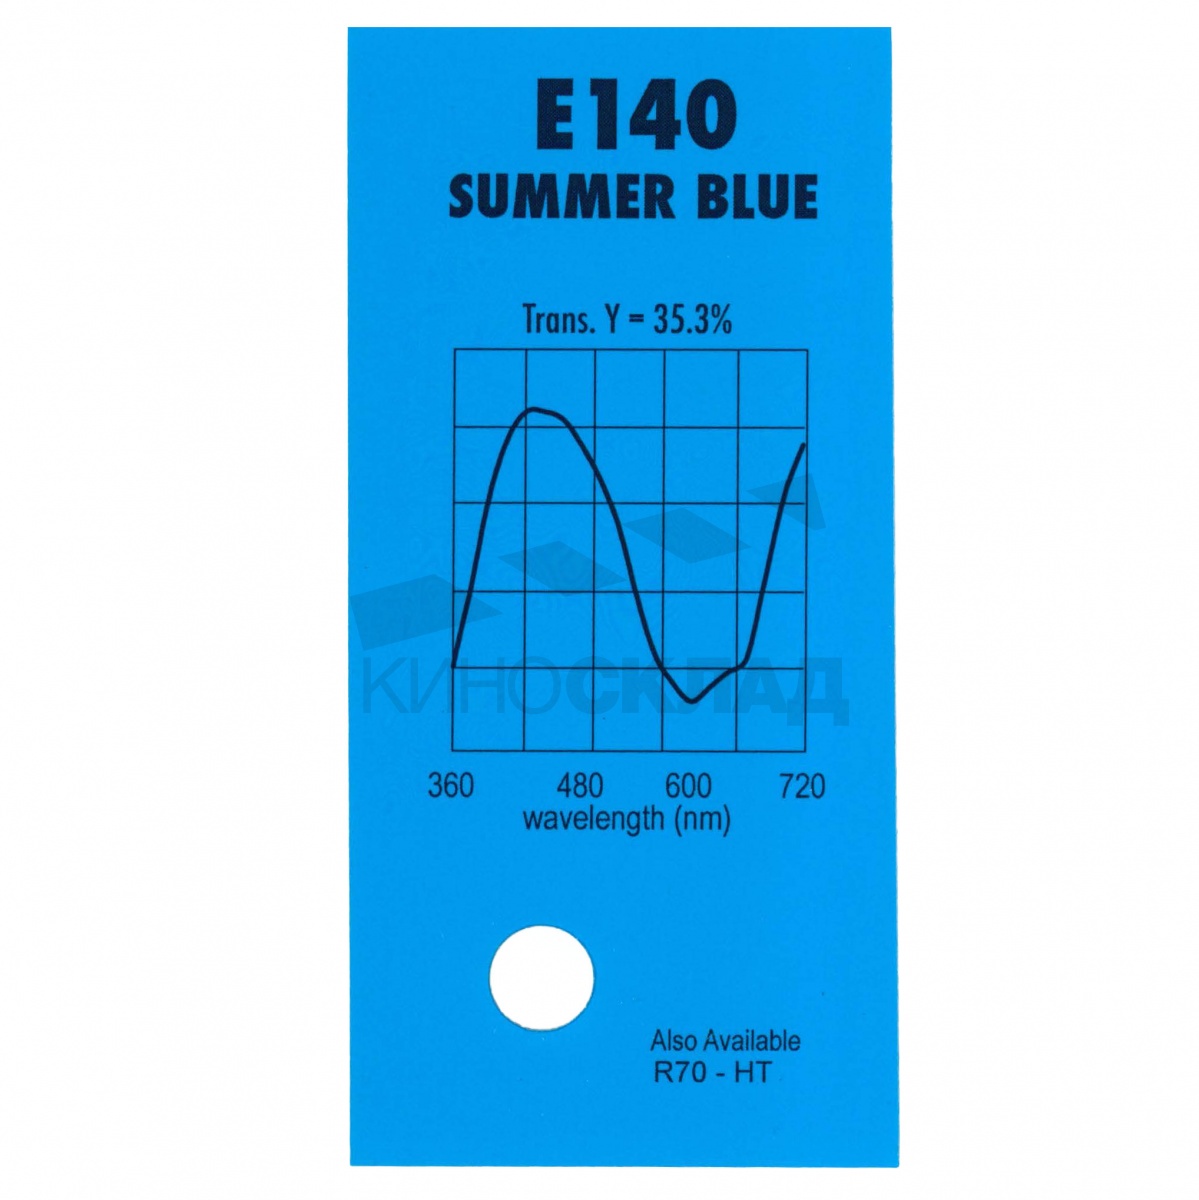 Детальная картинка товара LEE Filters # 140 Summer Blue в магазине Музыкальная Тема